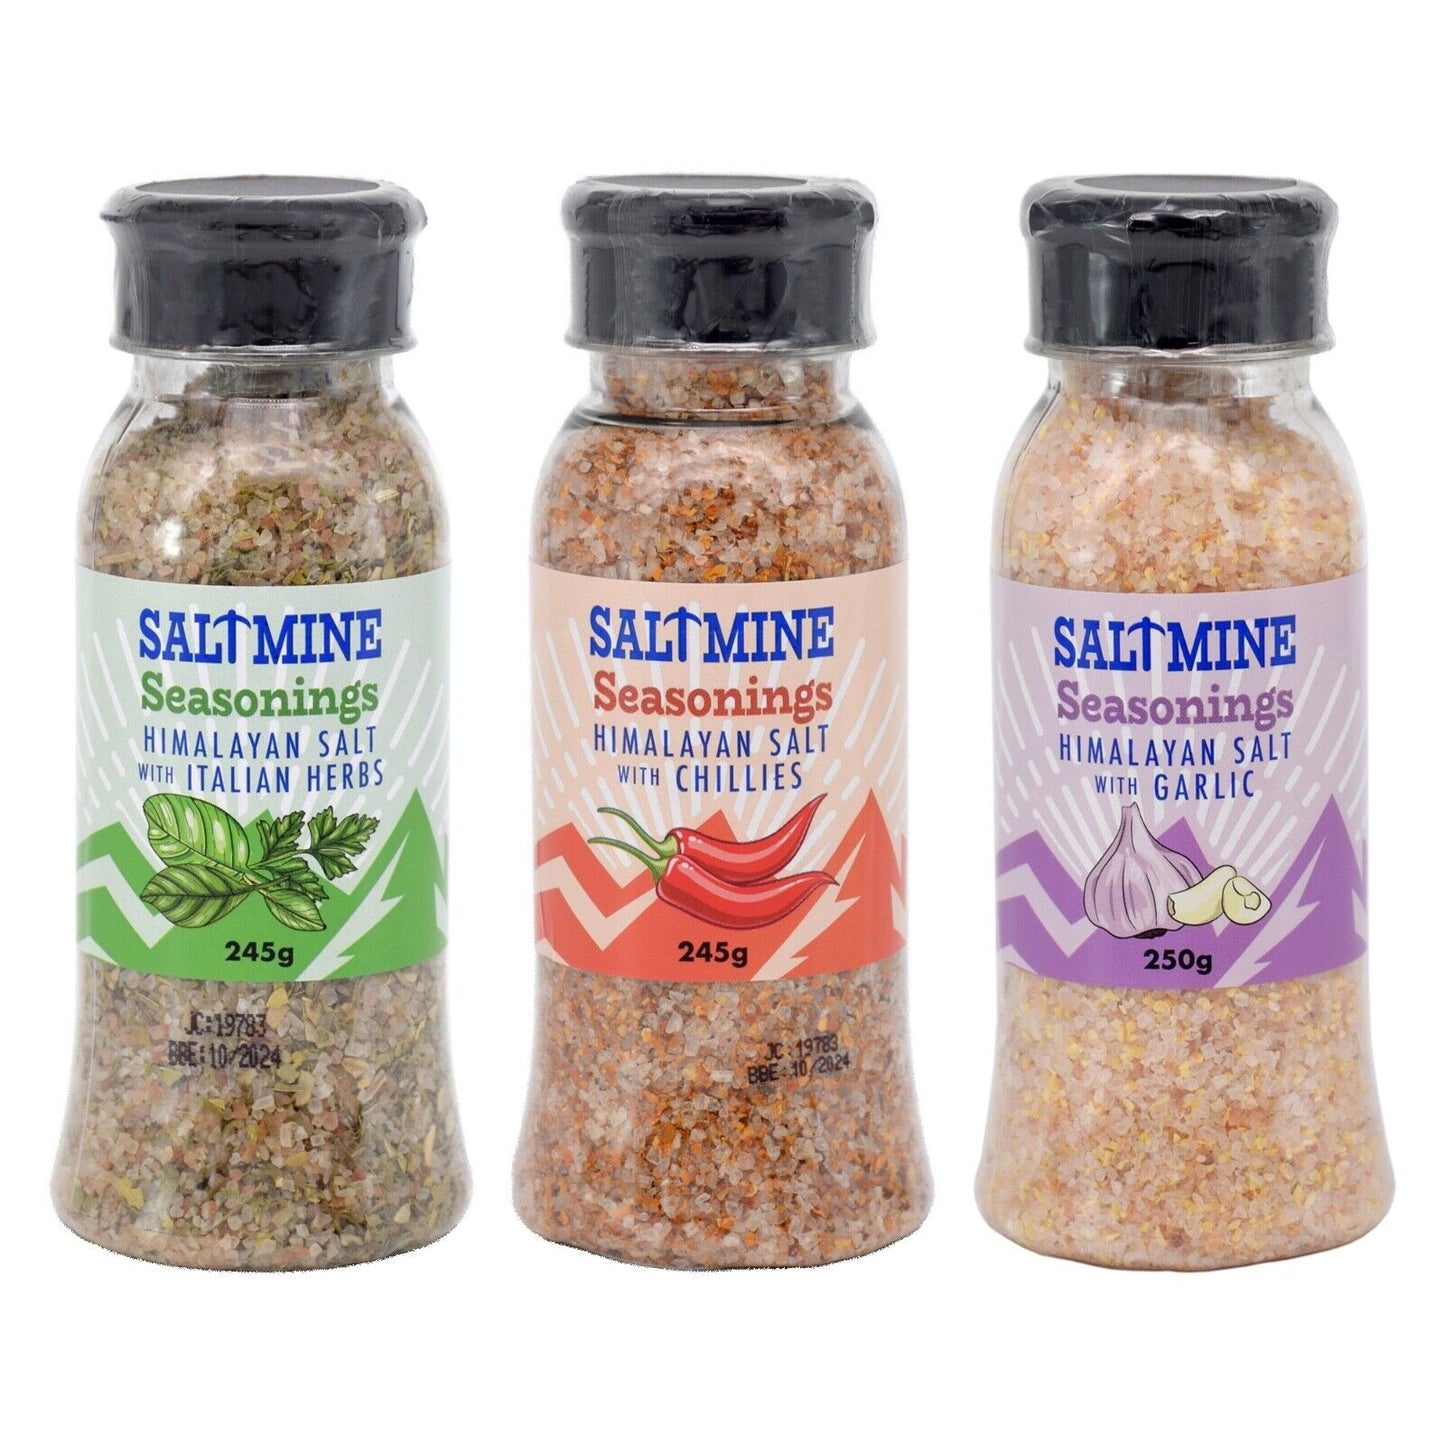 3x Mix Saltmine Seasoning Himalayan Salt with Garlic, Chillies, Herbs (3 x 250g)